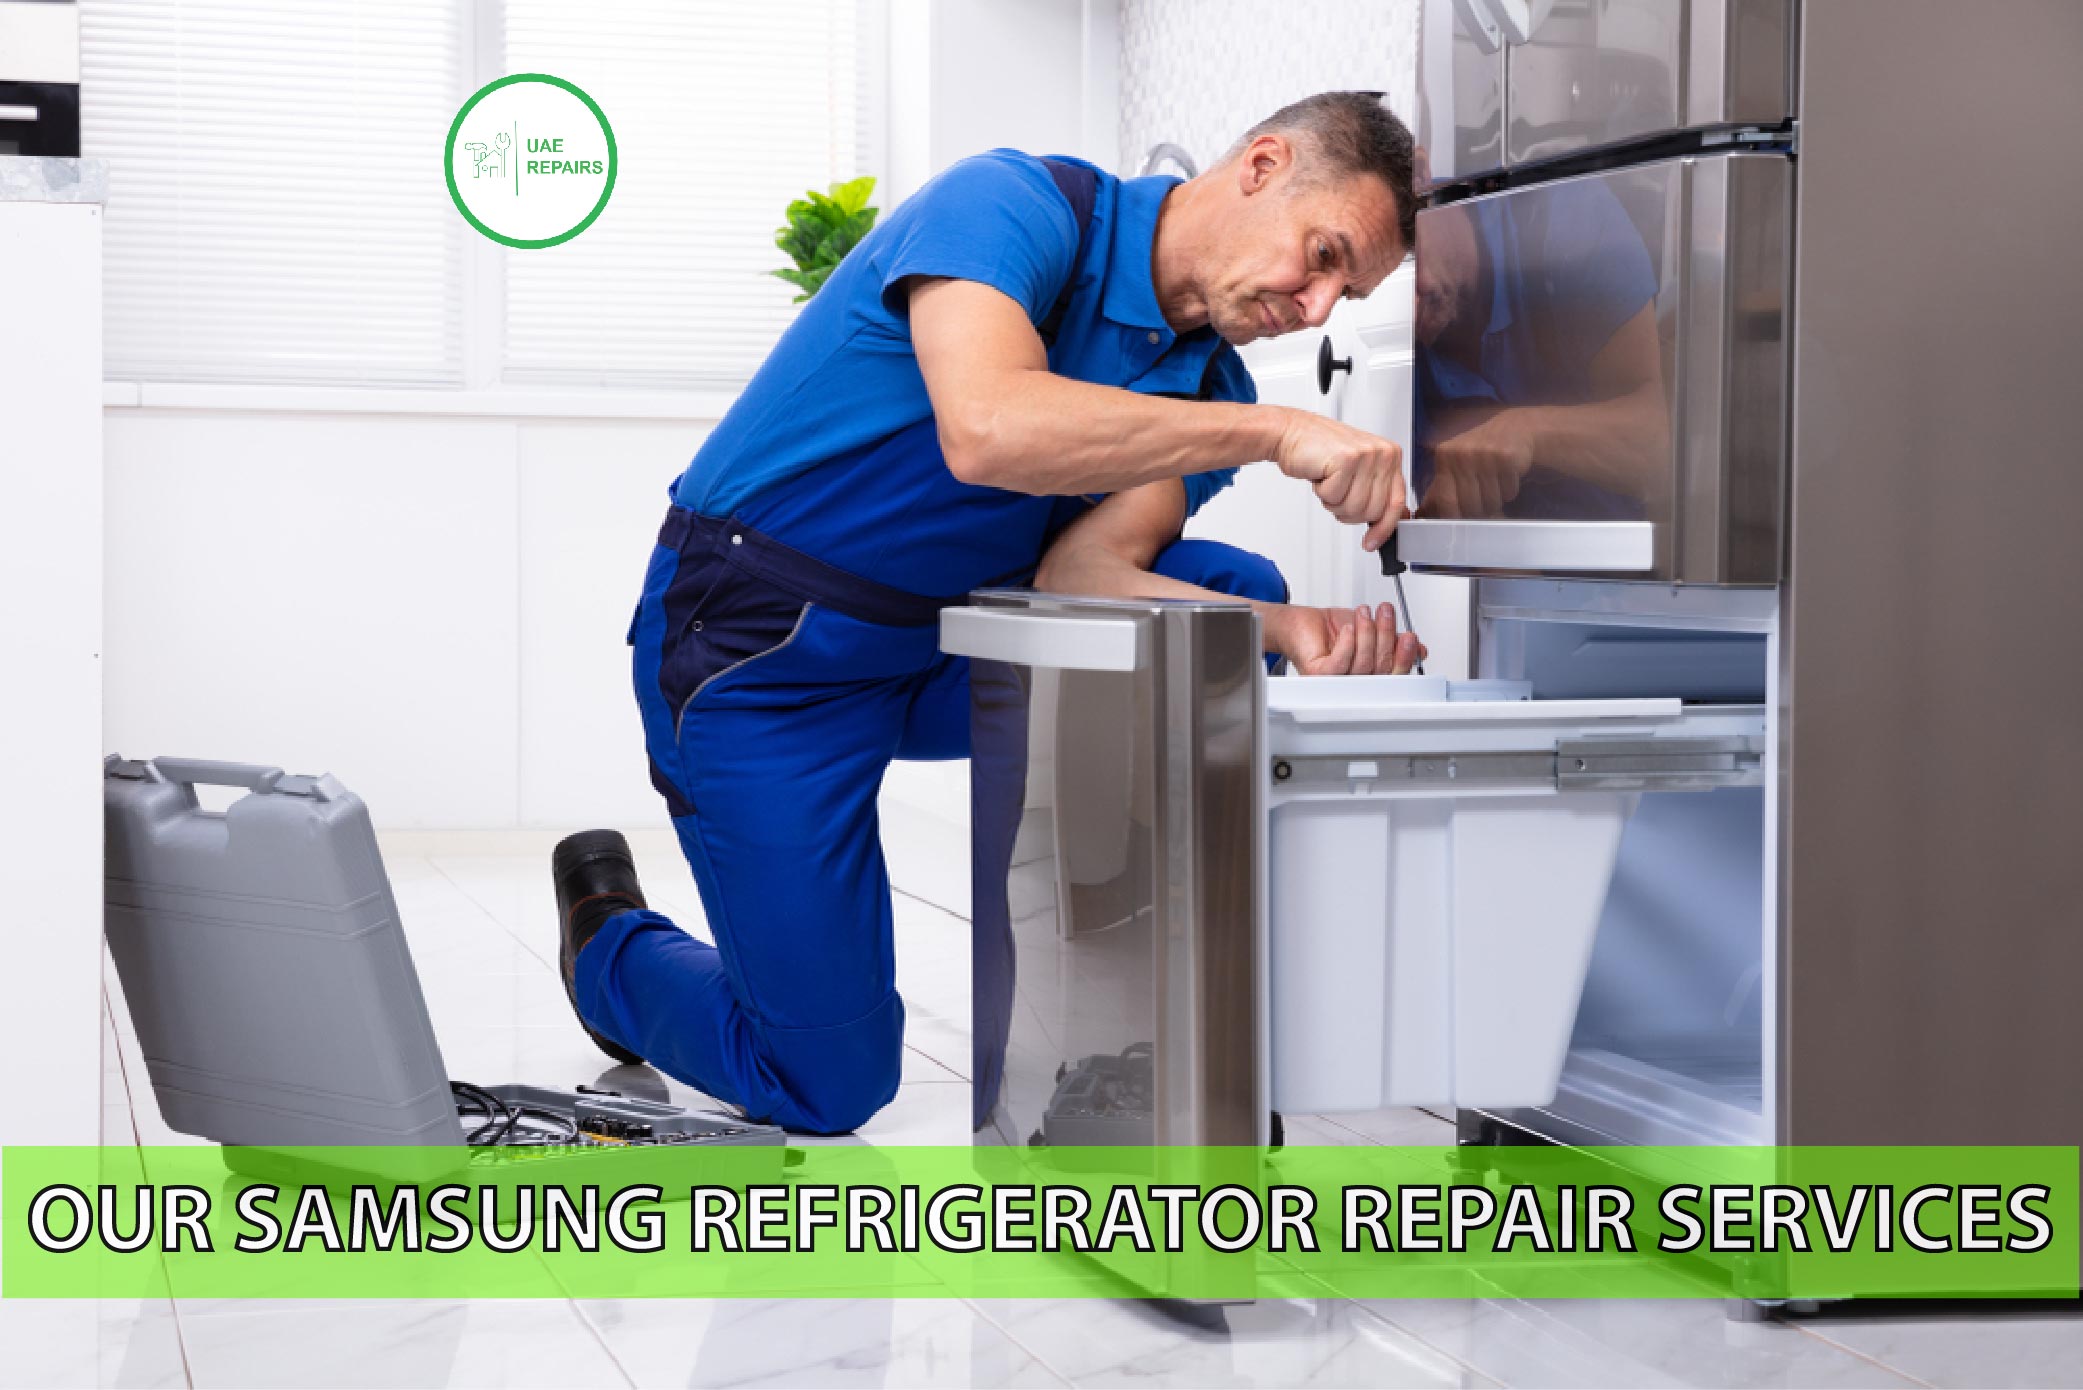 UAE REPAIRS Professional Samsung Refrigerator Repair Services CONTACT US 0588997516